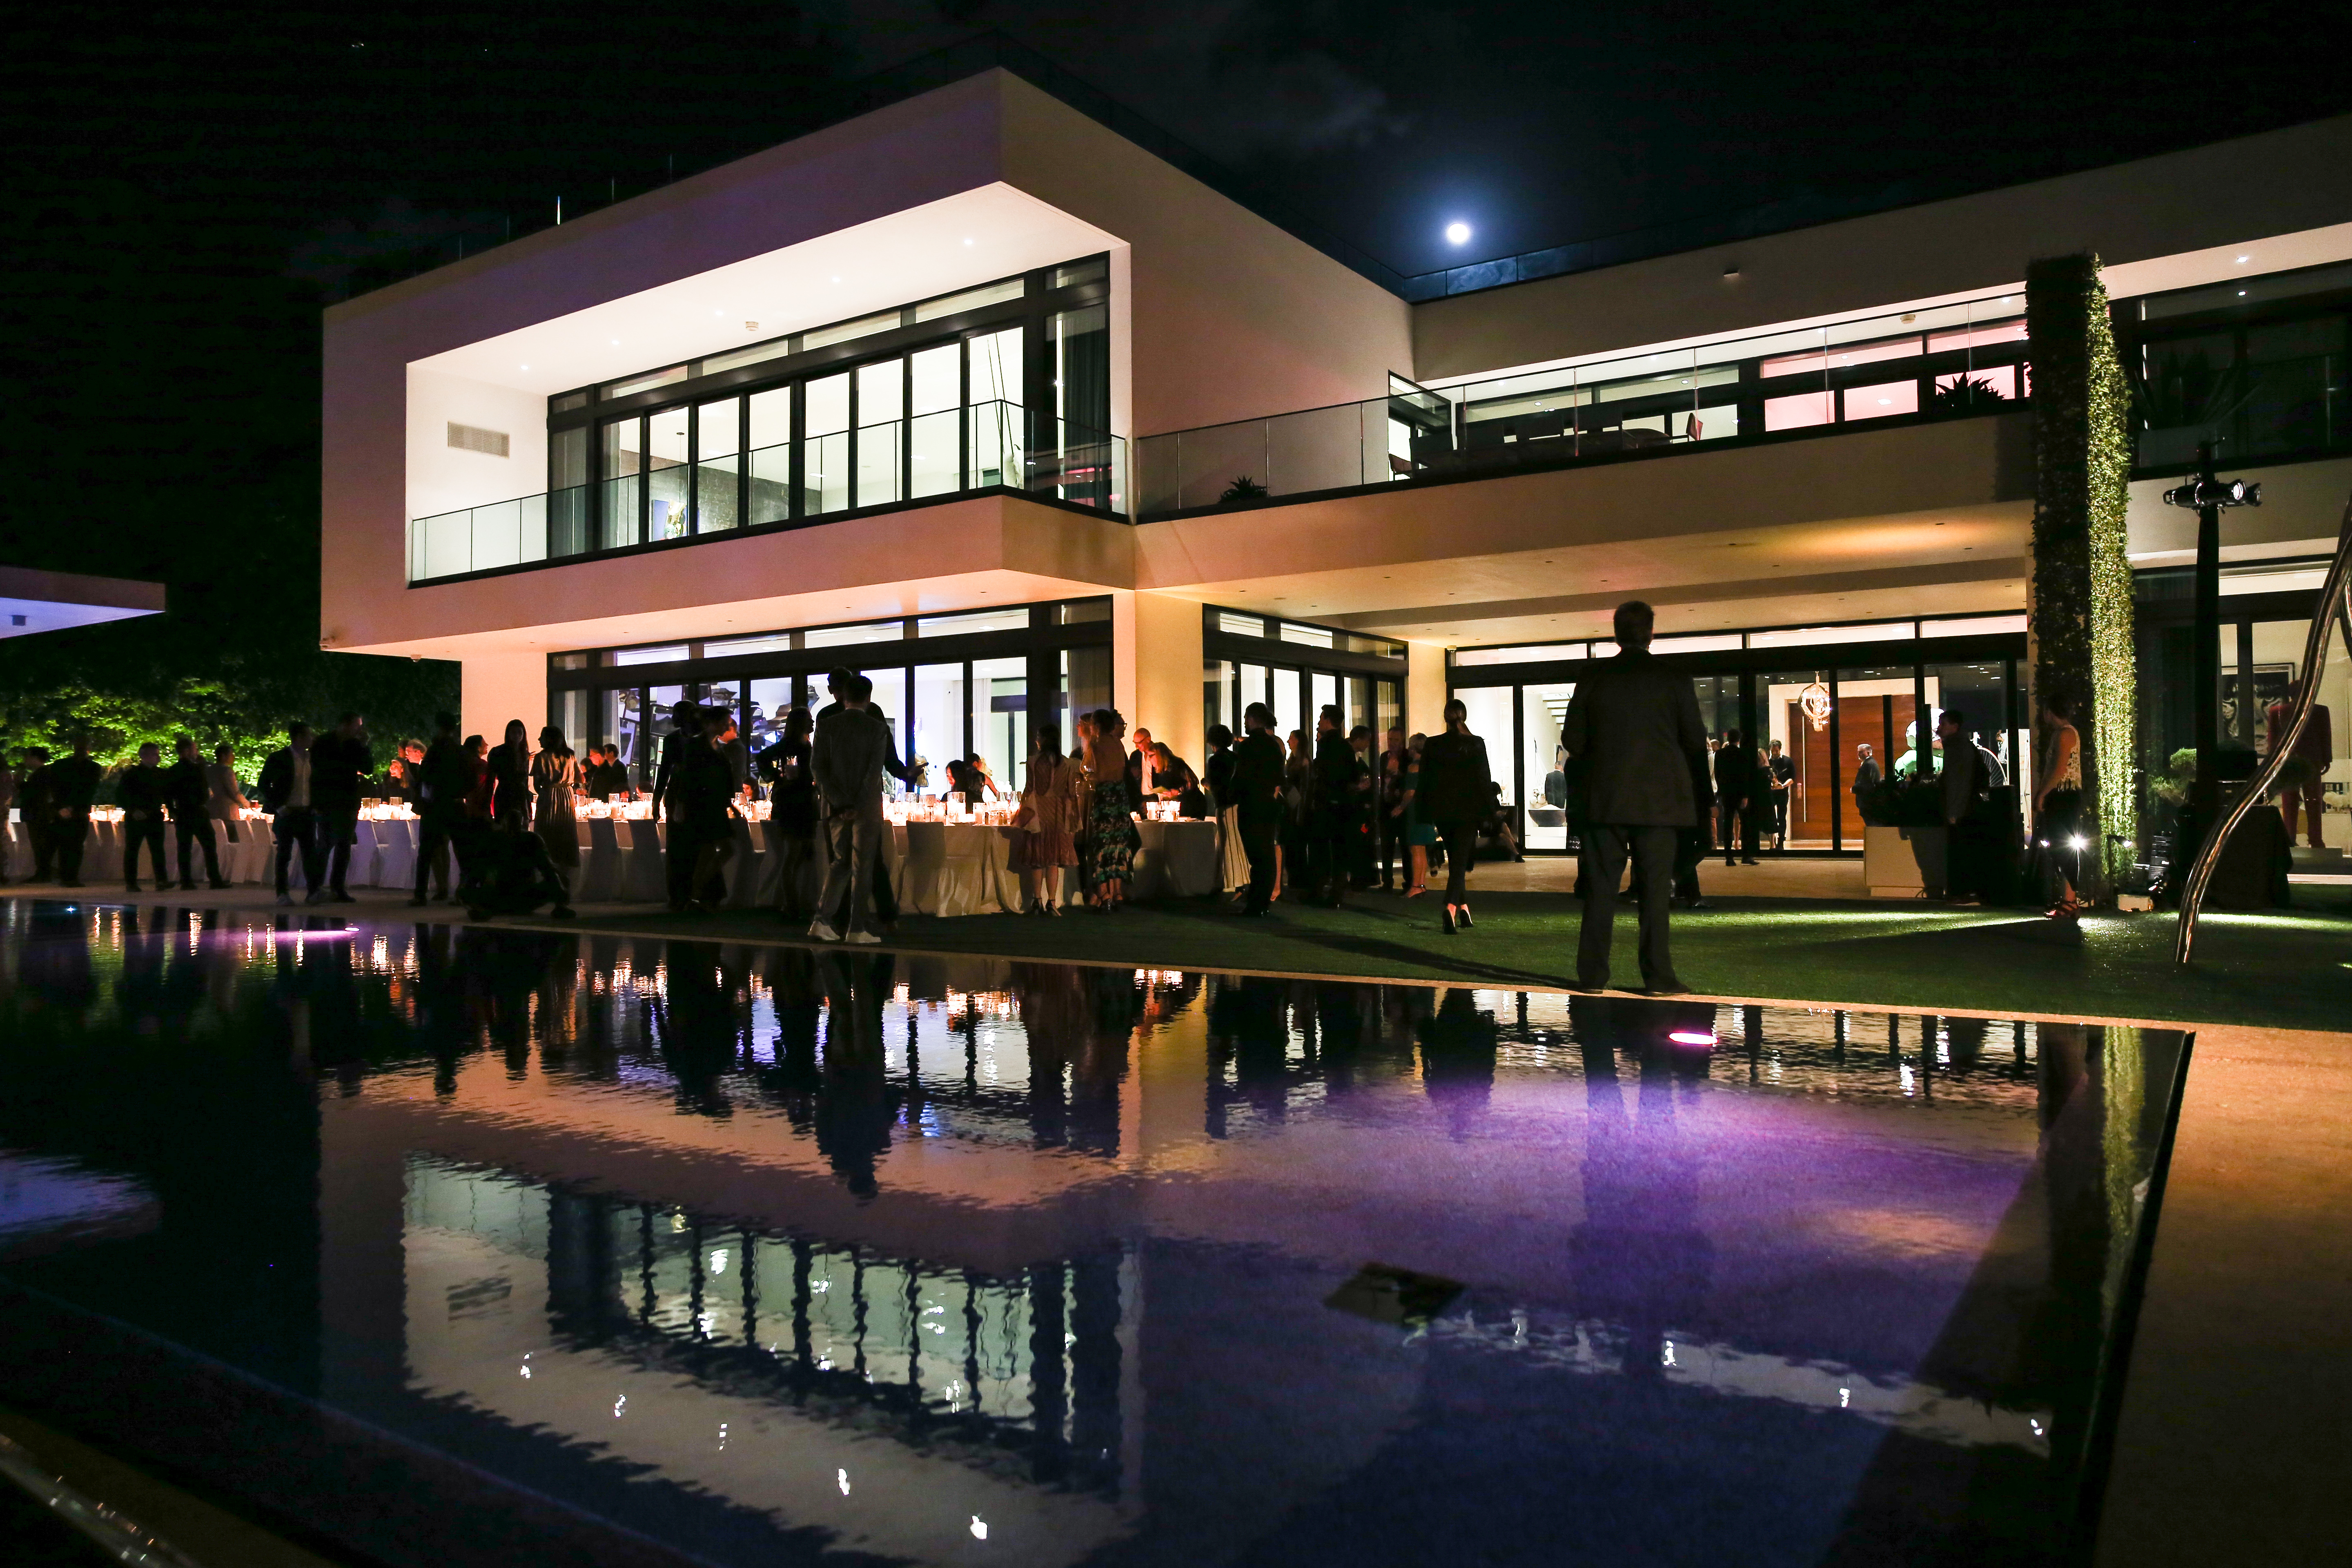 Inauguración del museo del Institute of Contemporary Art (ICA) en Miami con W Magazine